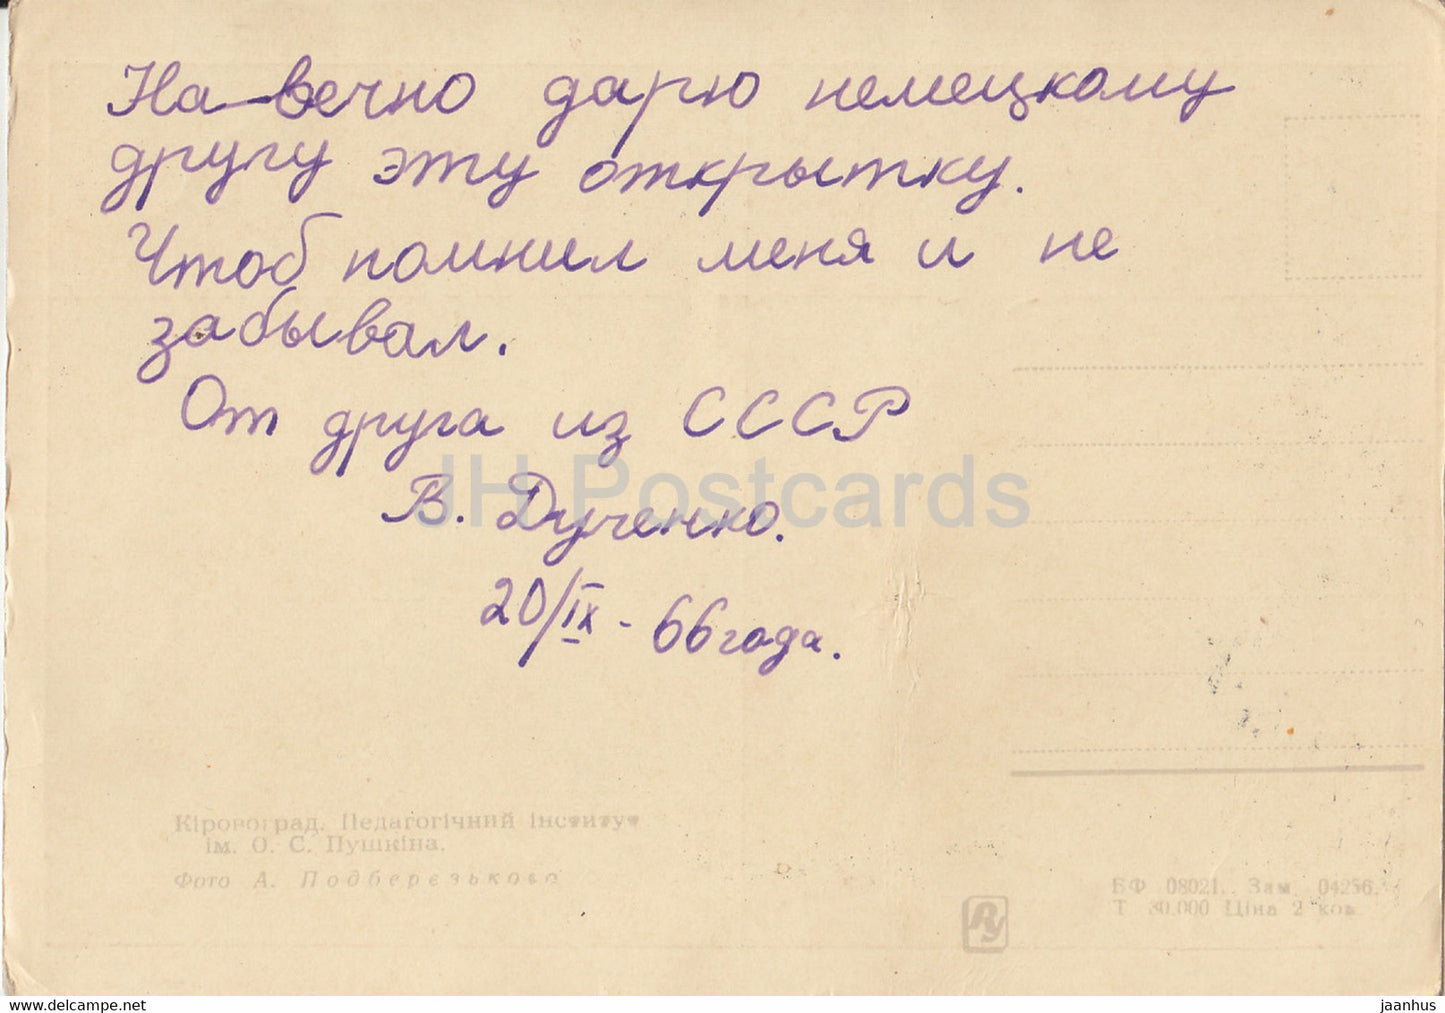 Kirowograd – Kropywnyzkyj – Puschkin-Pädagogisches Institut – 1966 – Ukraine UdSSR – gebraucht